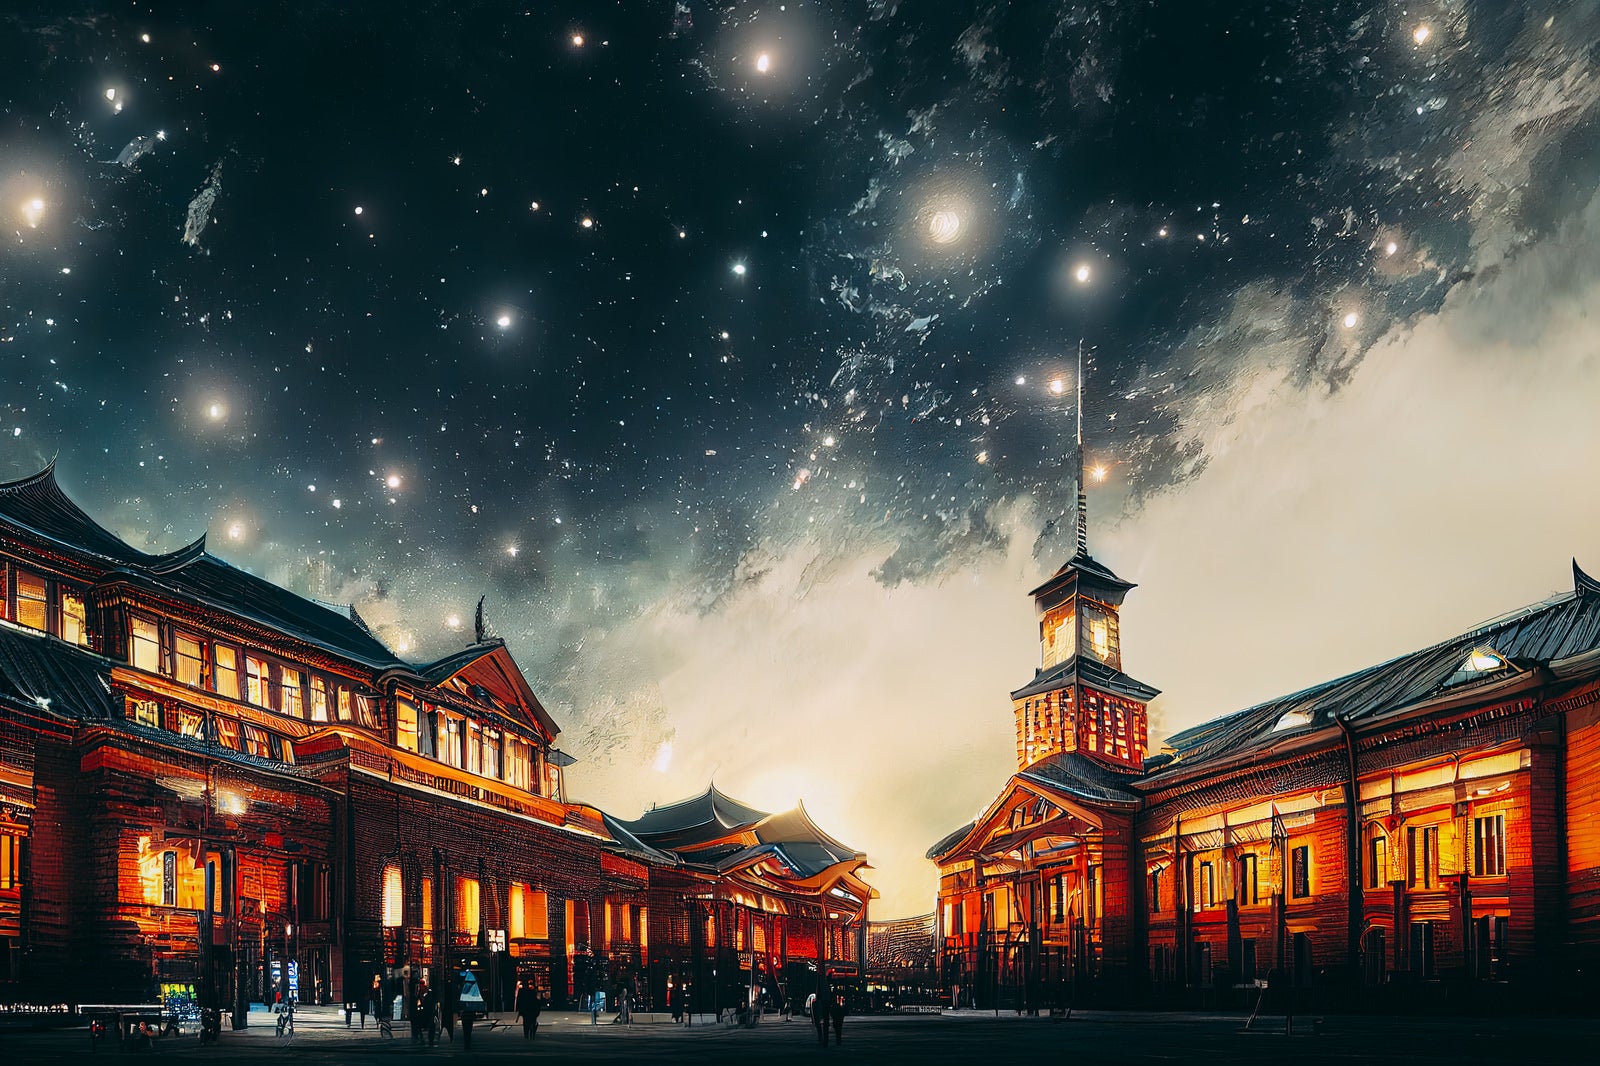 「煌めく星とハイカラな建物」の写真